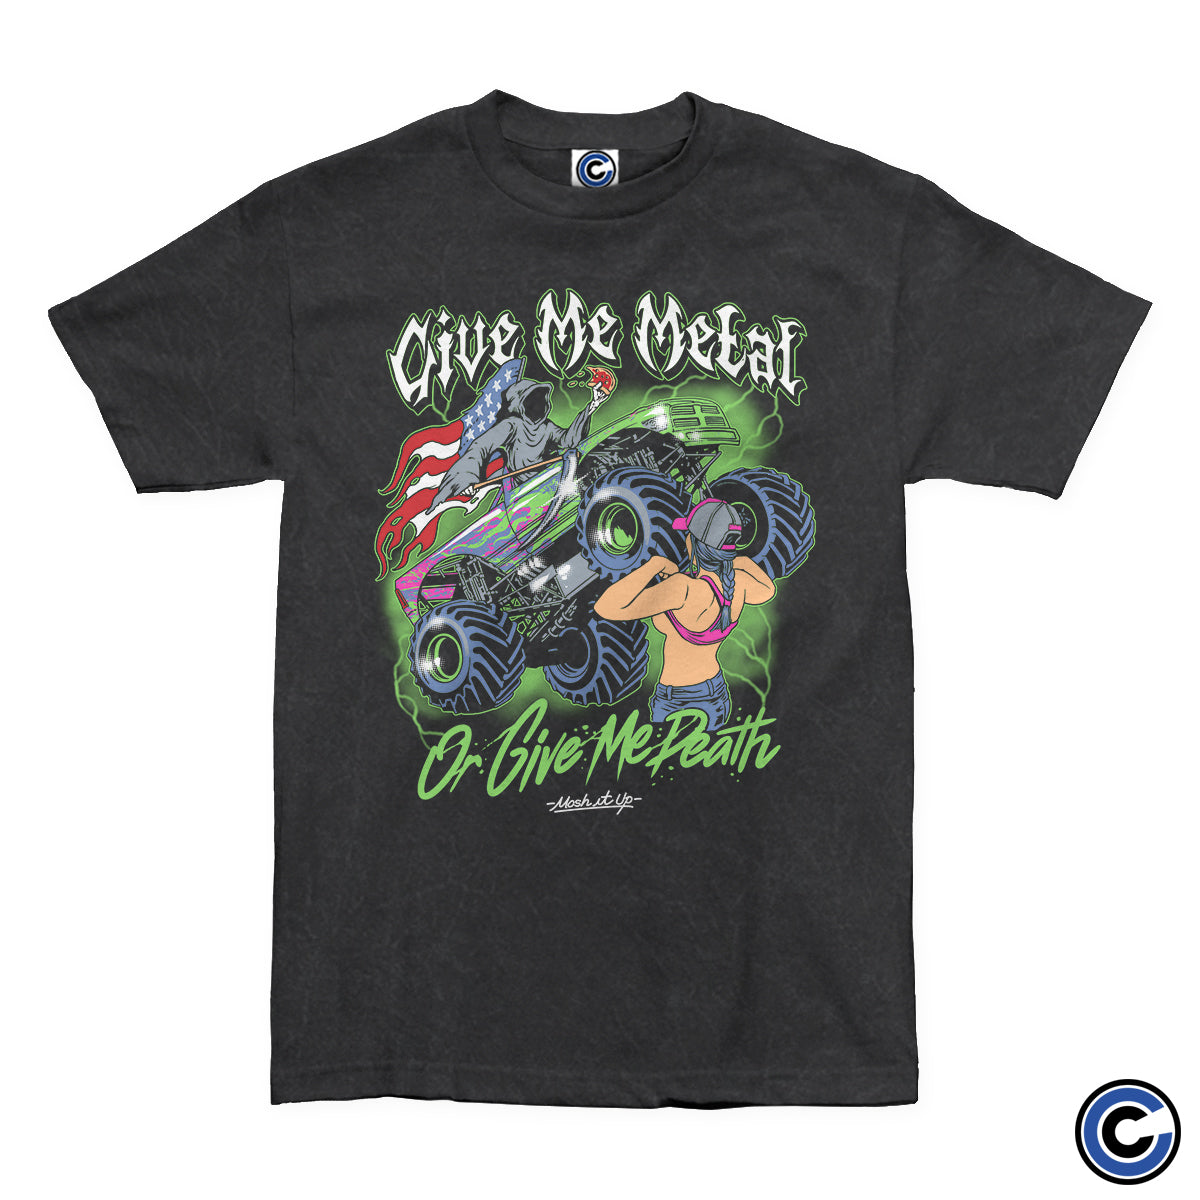 Mosh It Up "Monster Truck" Shirt